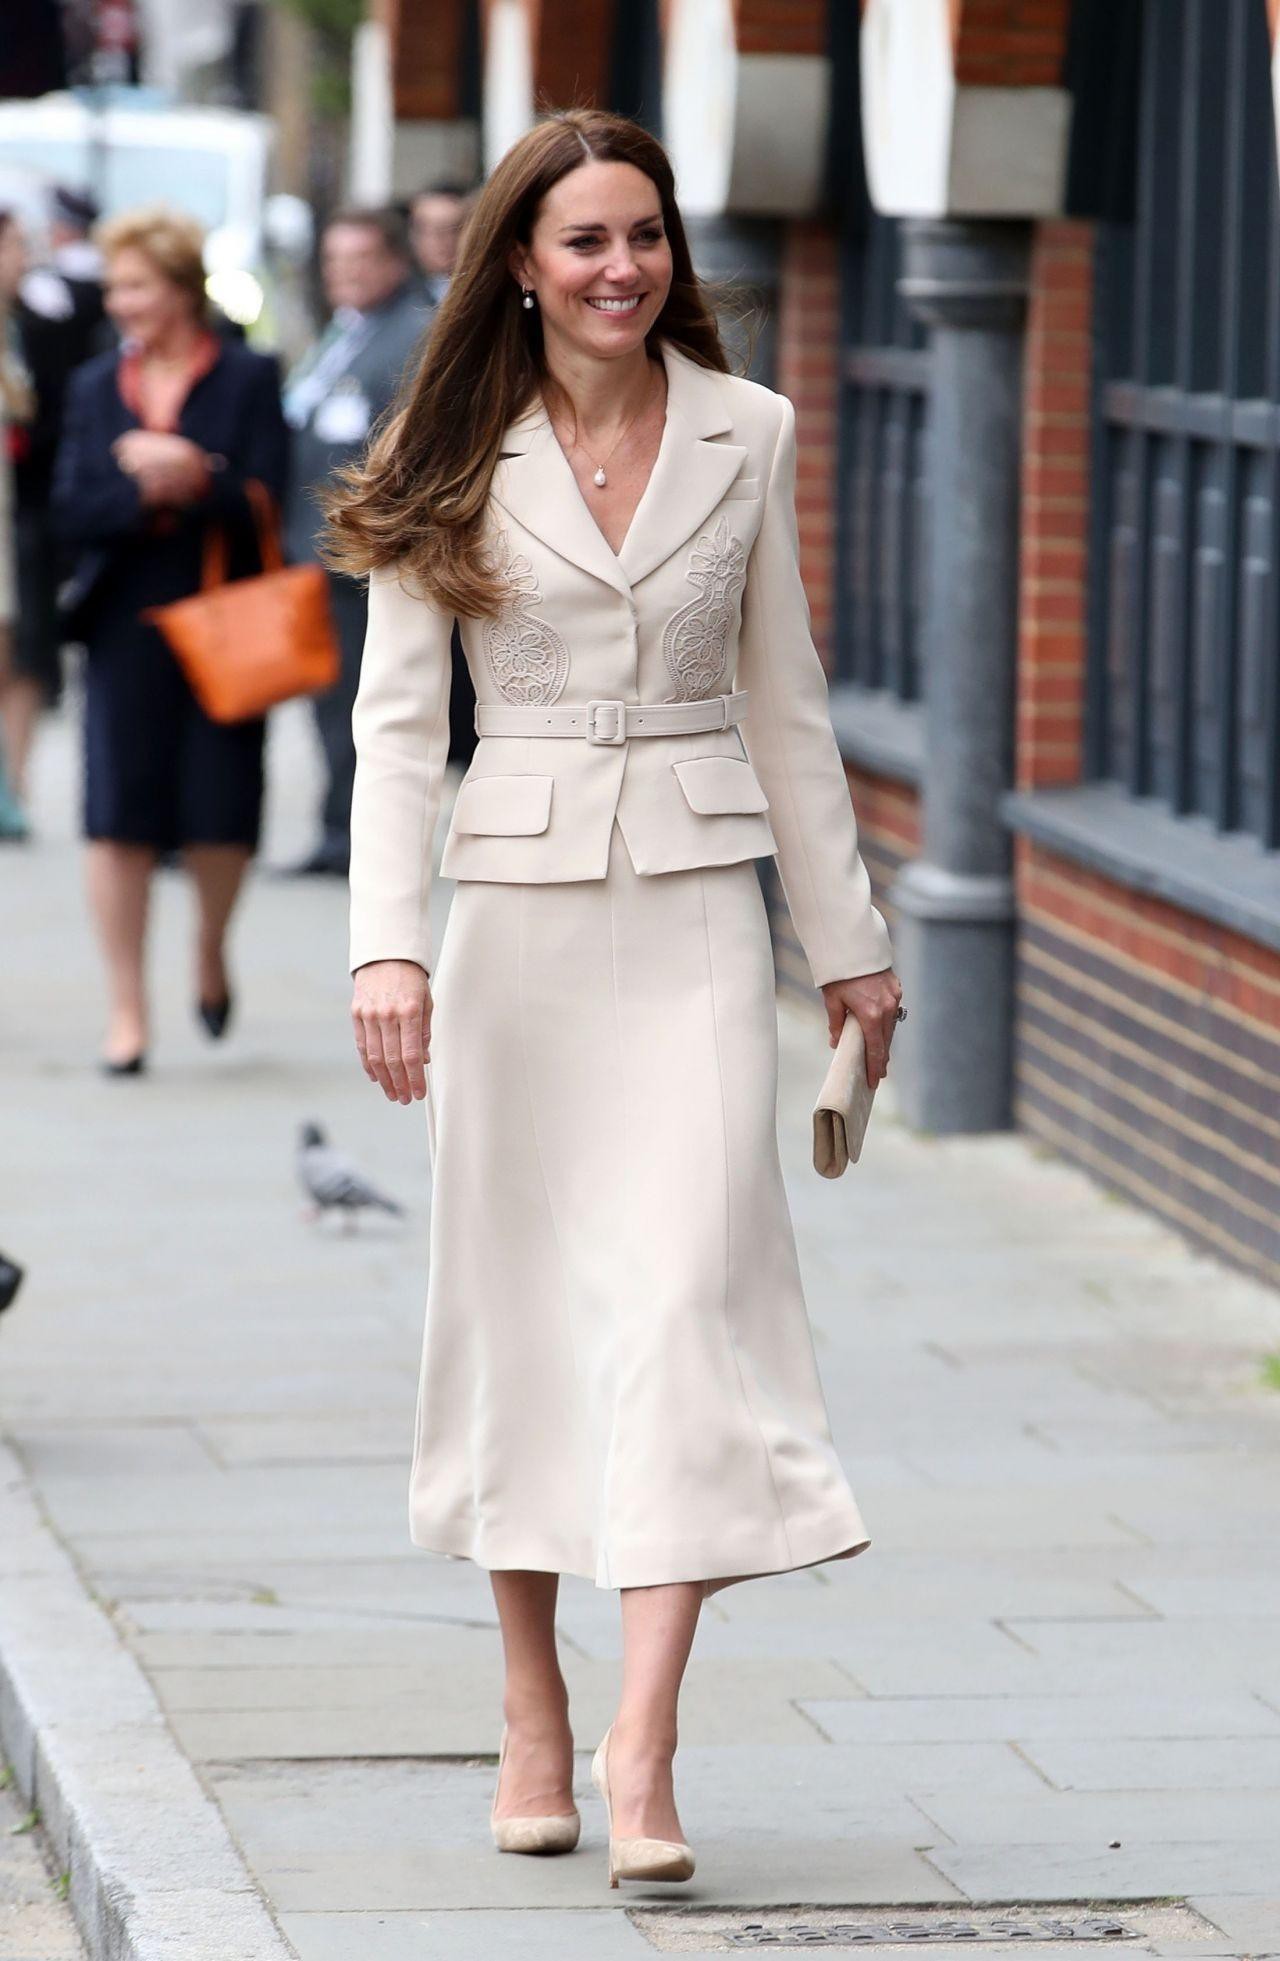 Ngắm những trang phục đẹp thanh lịch của 'Biểu tượng thời trang Hoàng gia' - Công nương Kate - Ảnh 8.